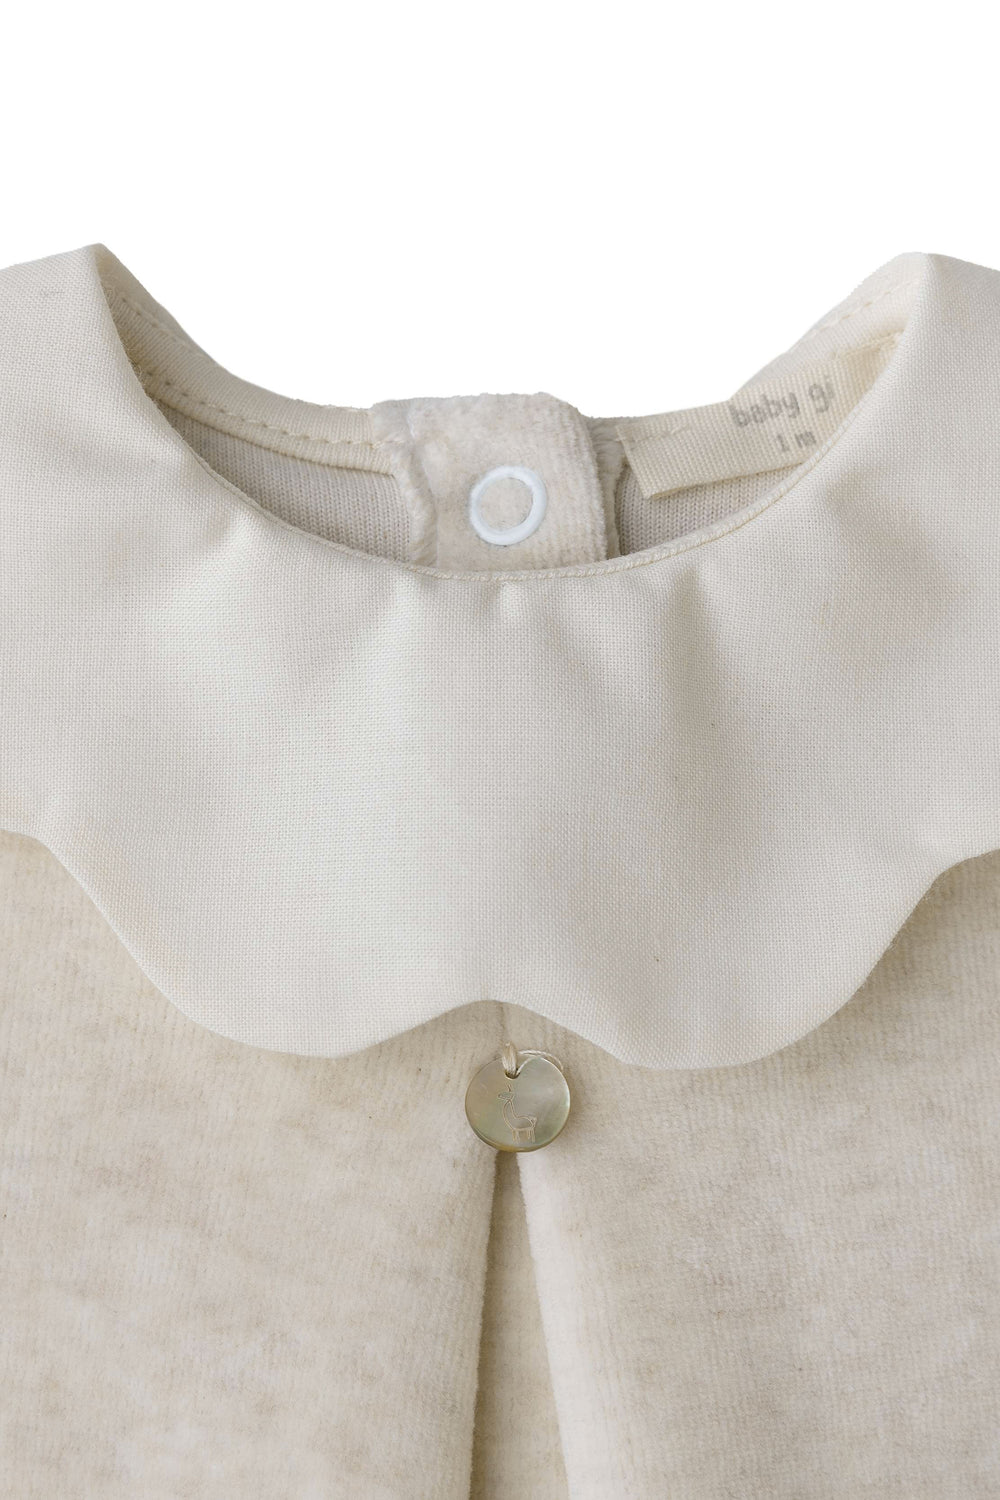 Baby Gi "True" Scalloped Collar Velour Sleepsuit | Millie and John